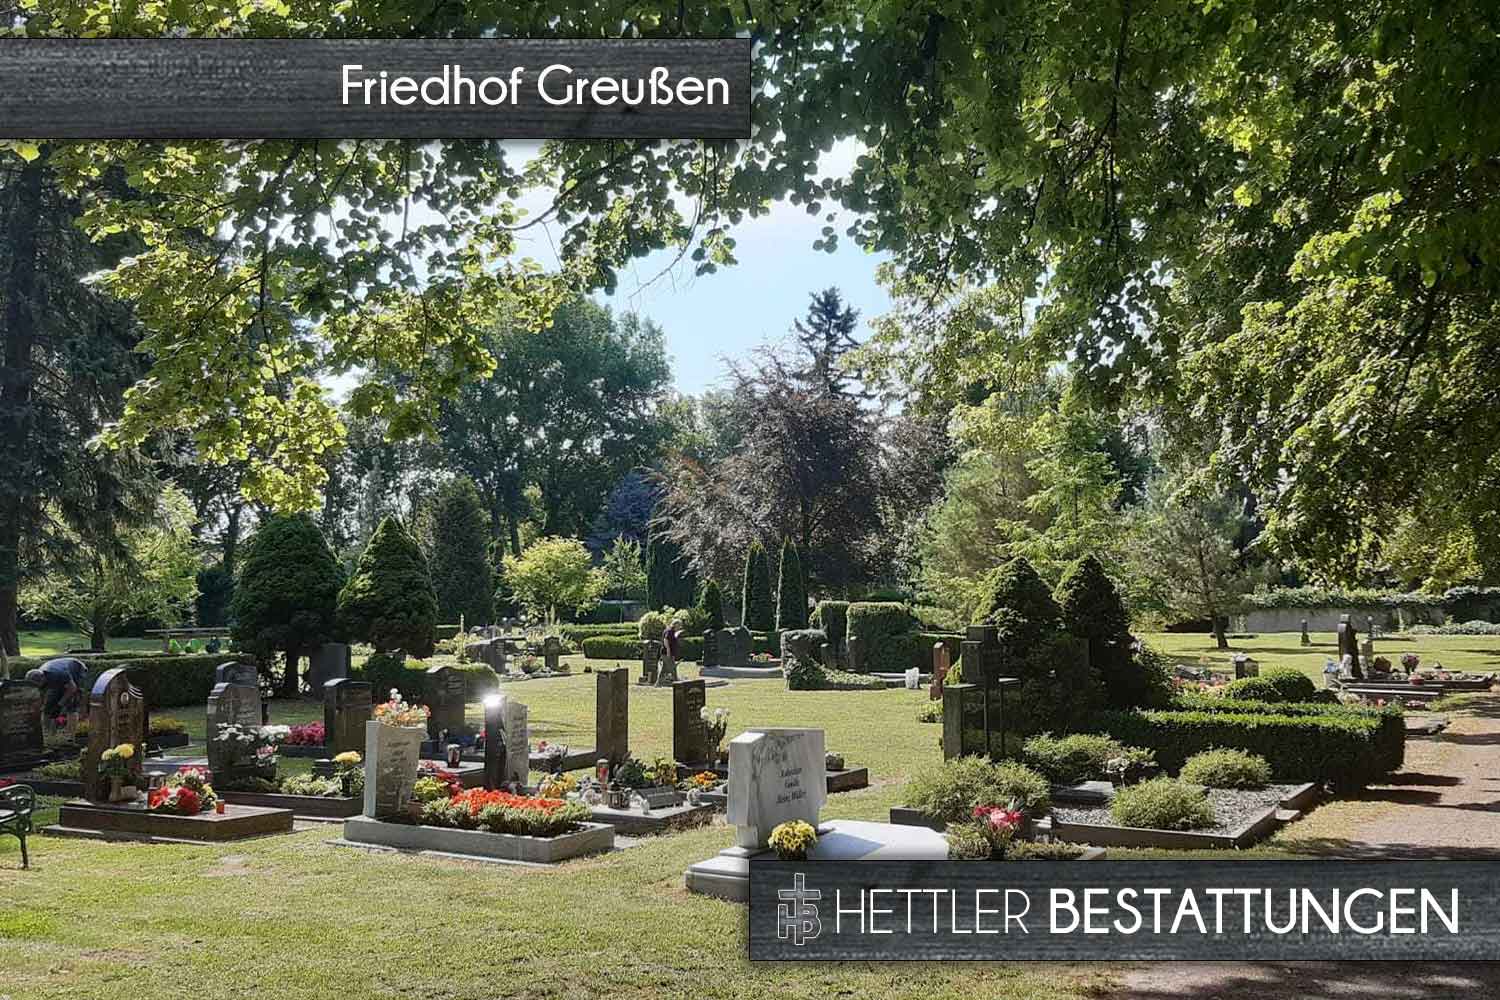 Friedhof in Greußen. Ihr Ort des Abschieds mit Hettler Bestattungen.